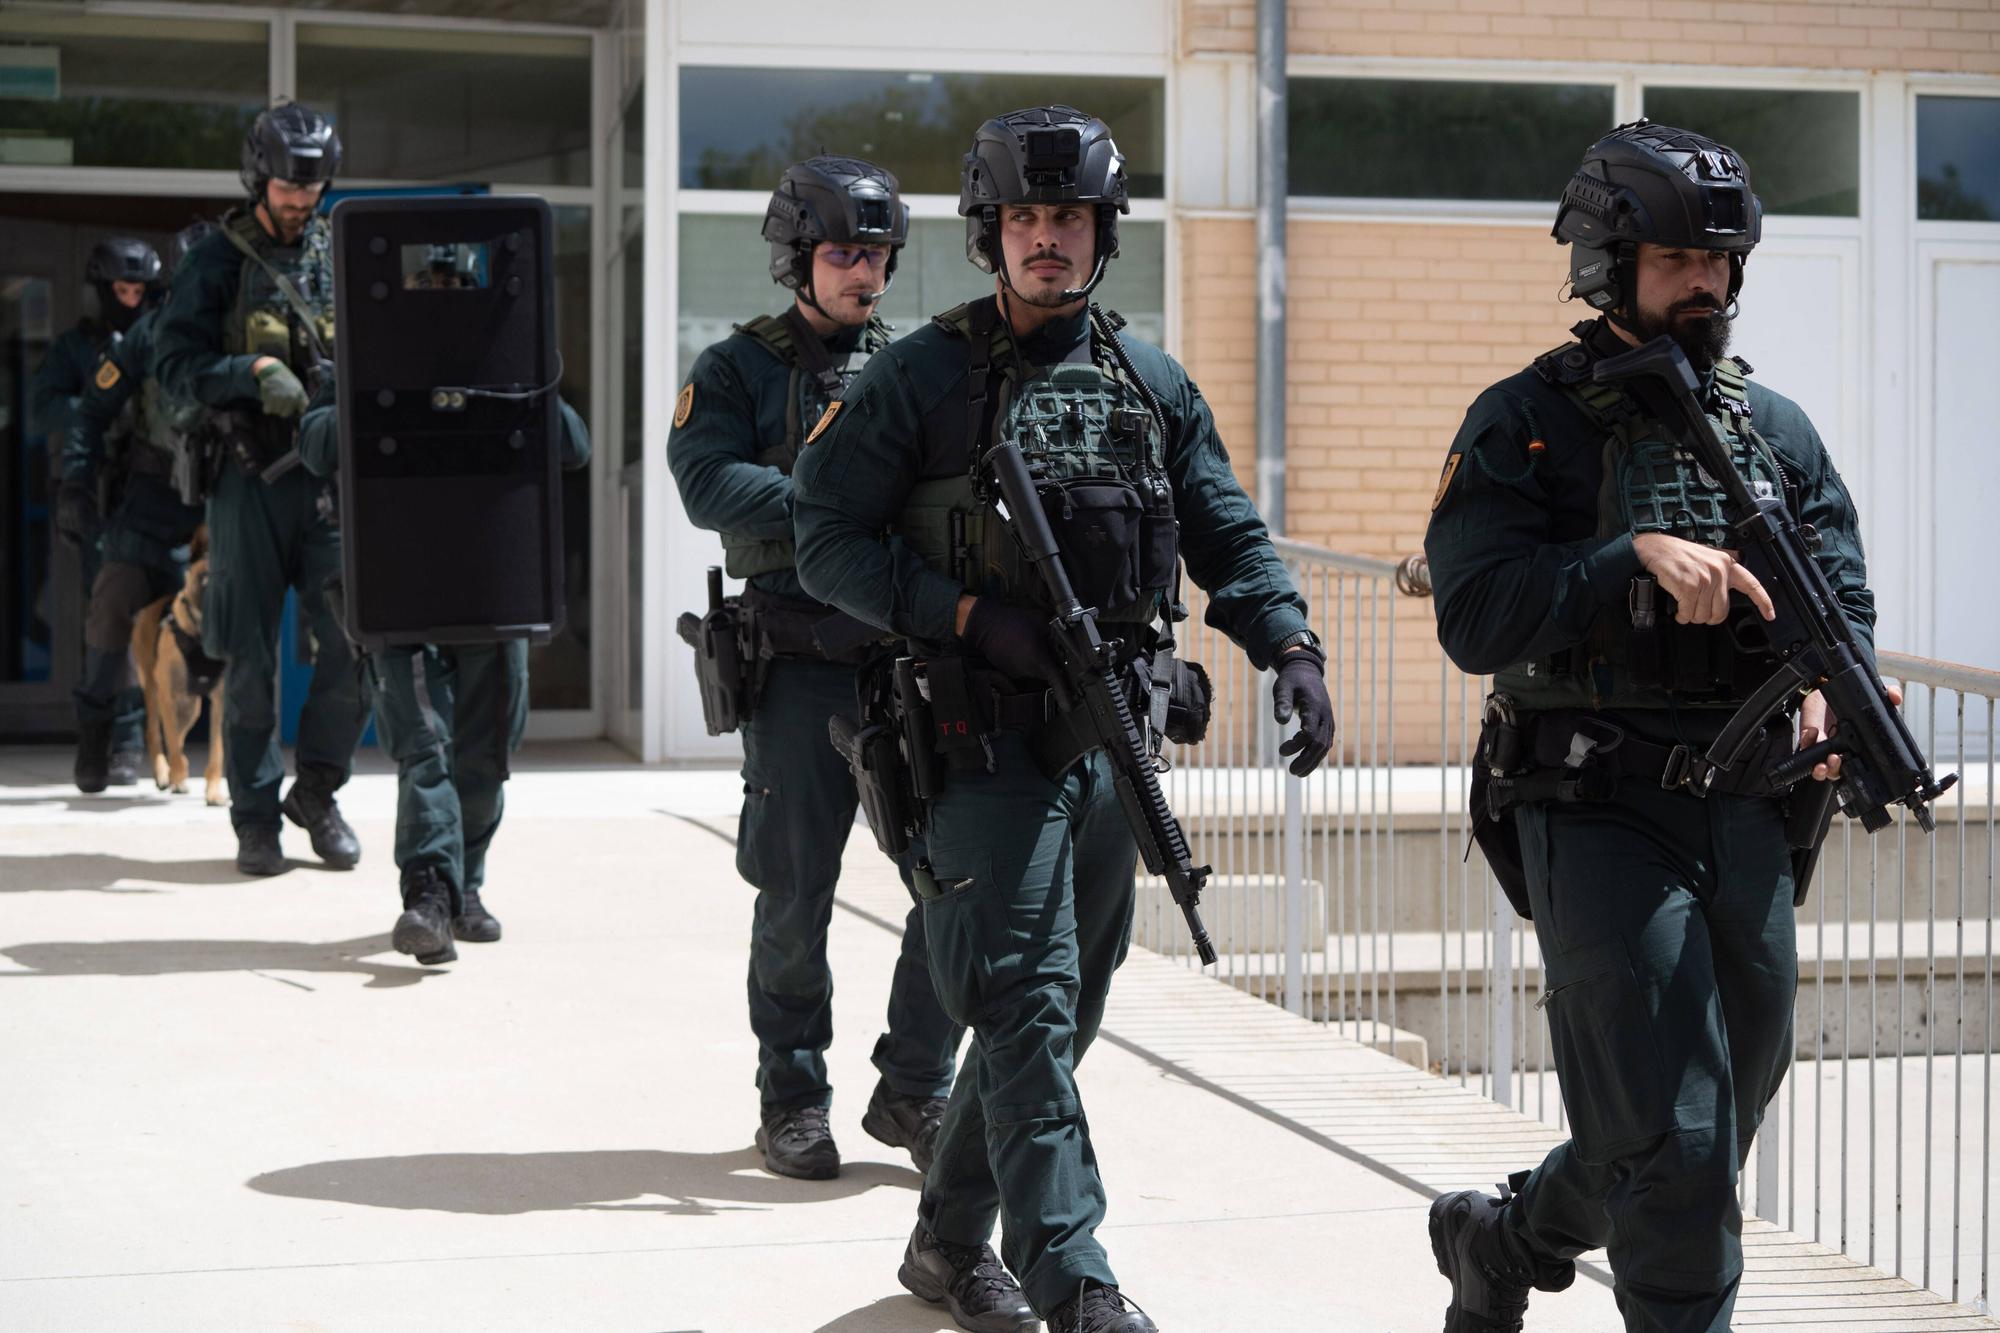 GALERÍA | El impresionante simulacro de atentado terrorista en el colegio de Coreses (Zamora)